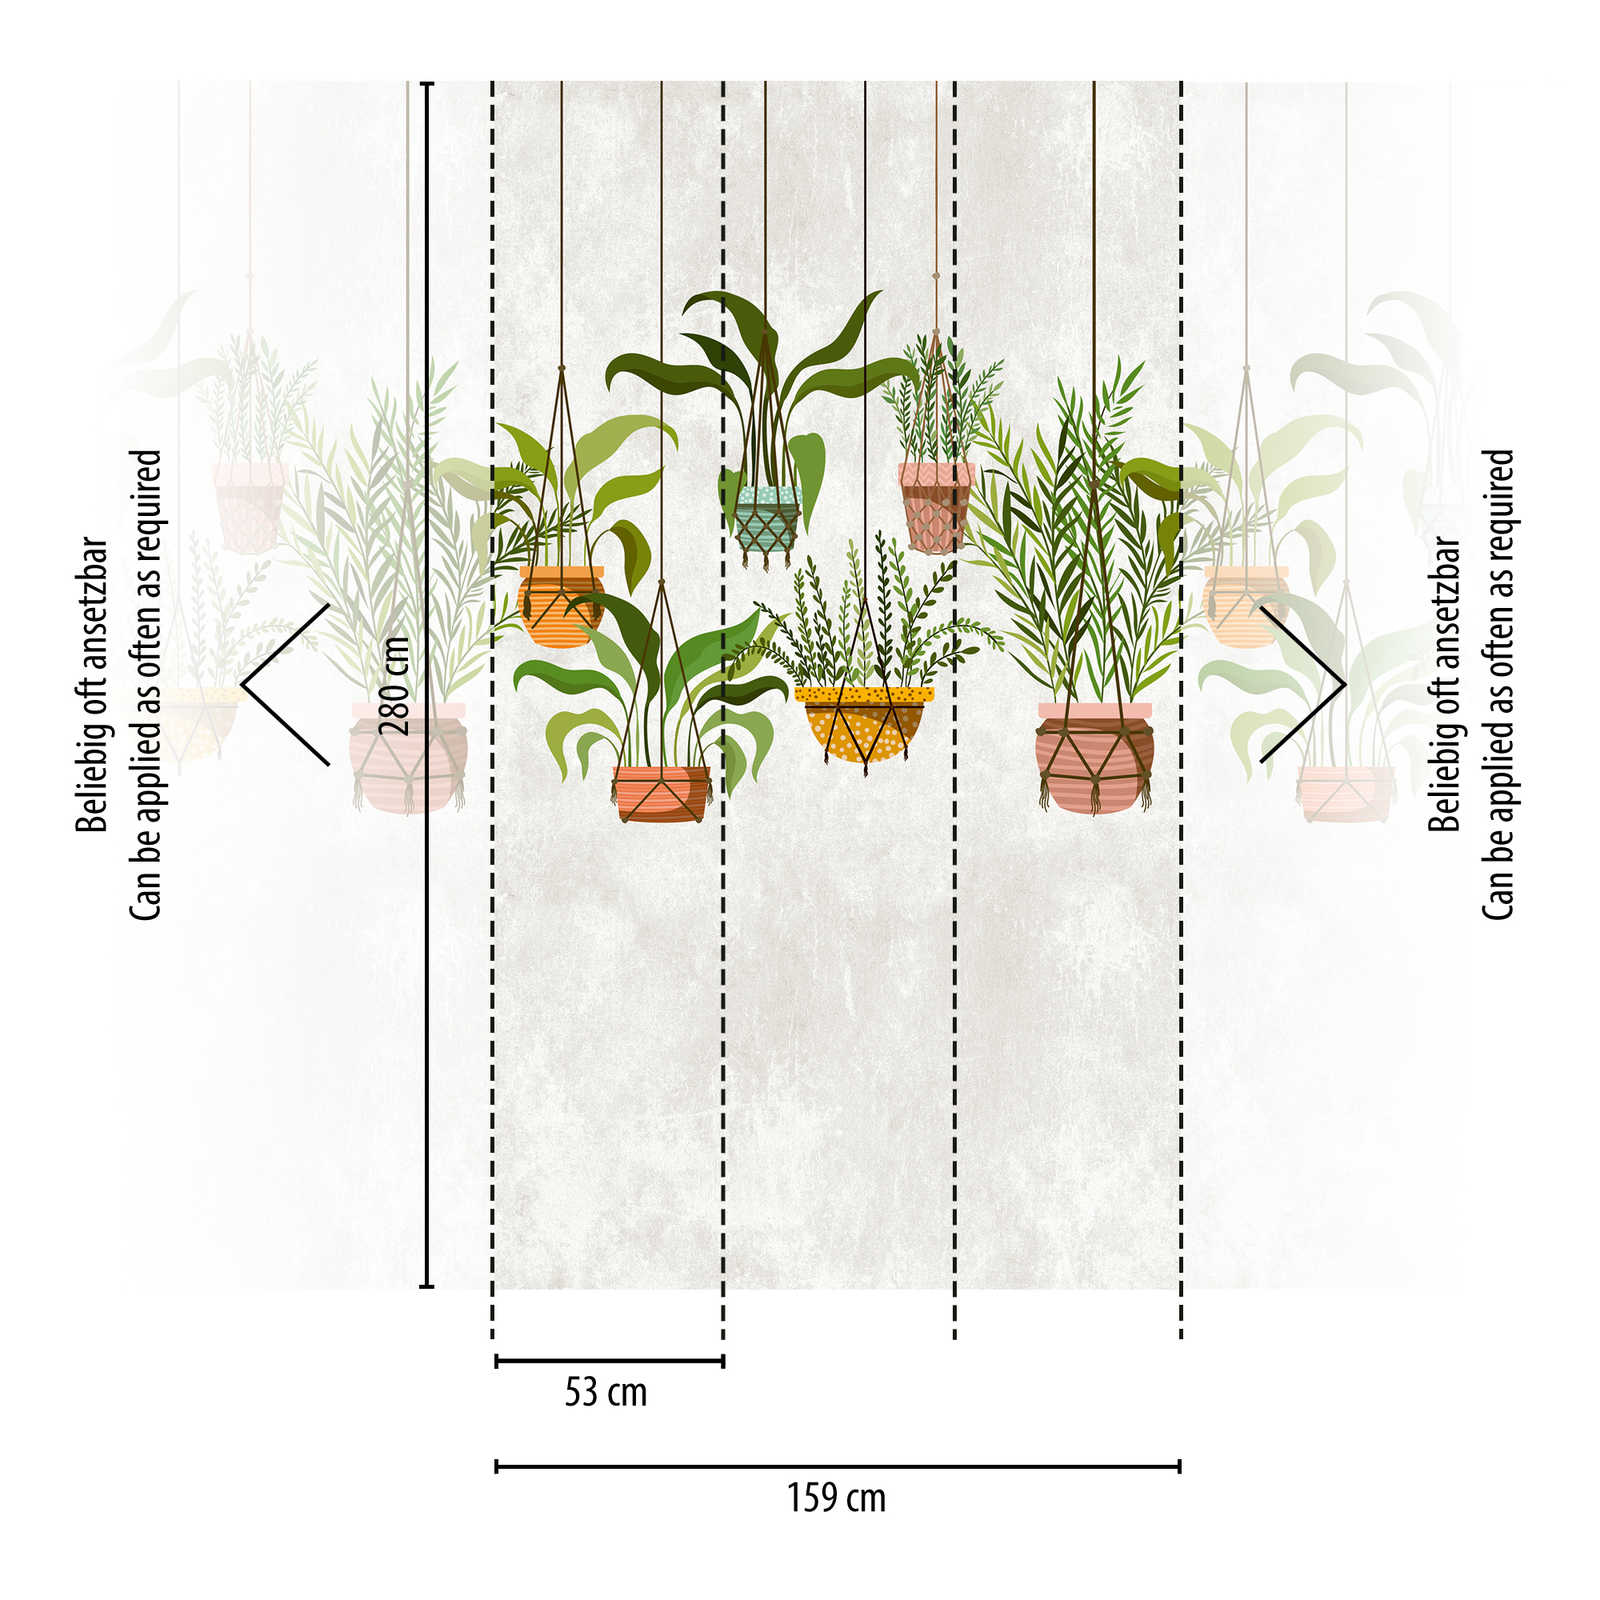             papier peint nouveauté | papier peint à motifs plantes suspendues décor botanique
        